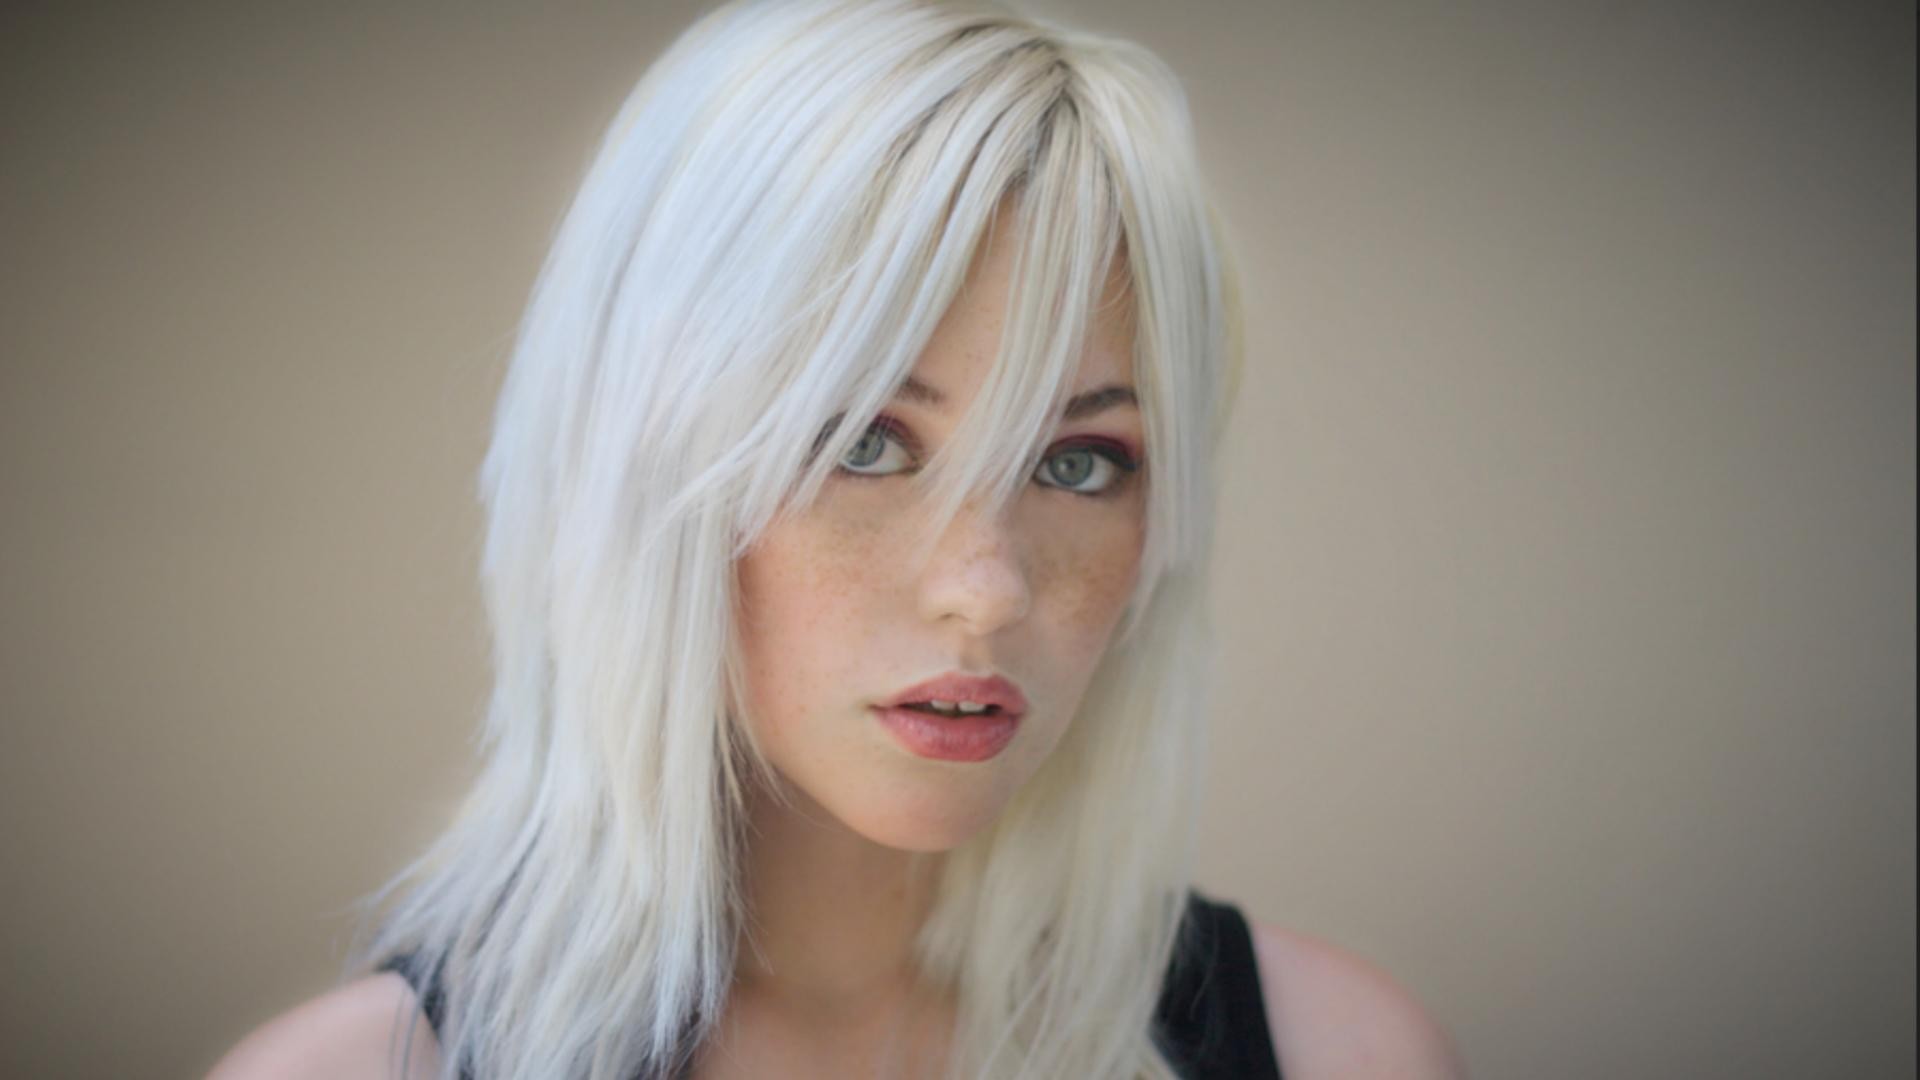 Devon Jade, White Hair, Freckles Wallpaper